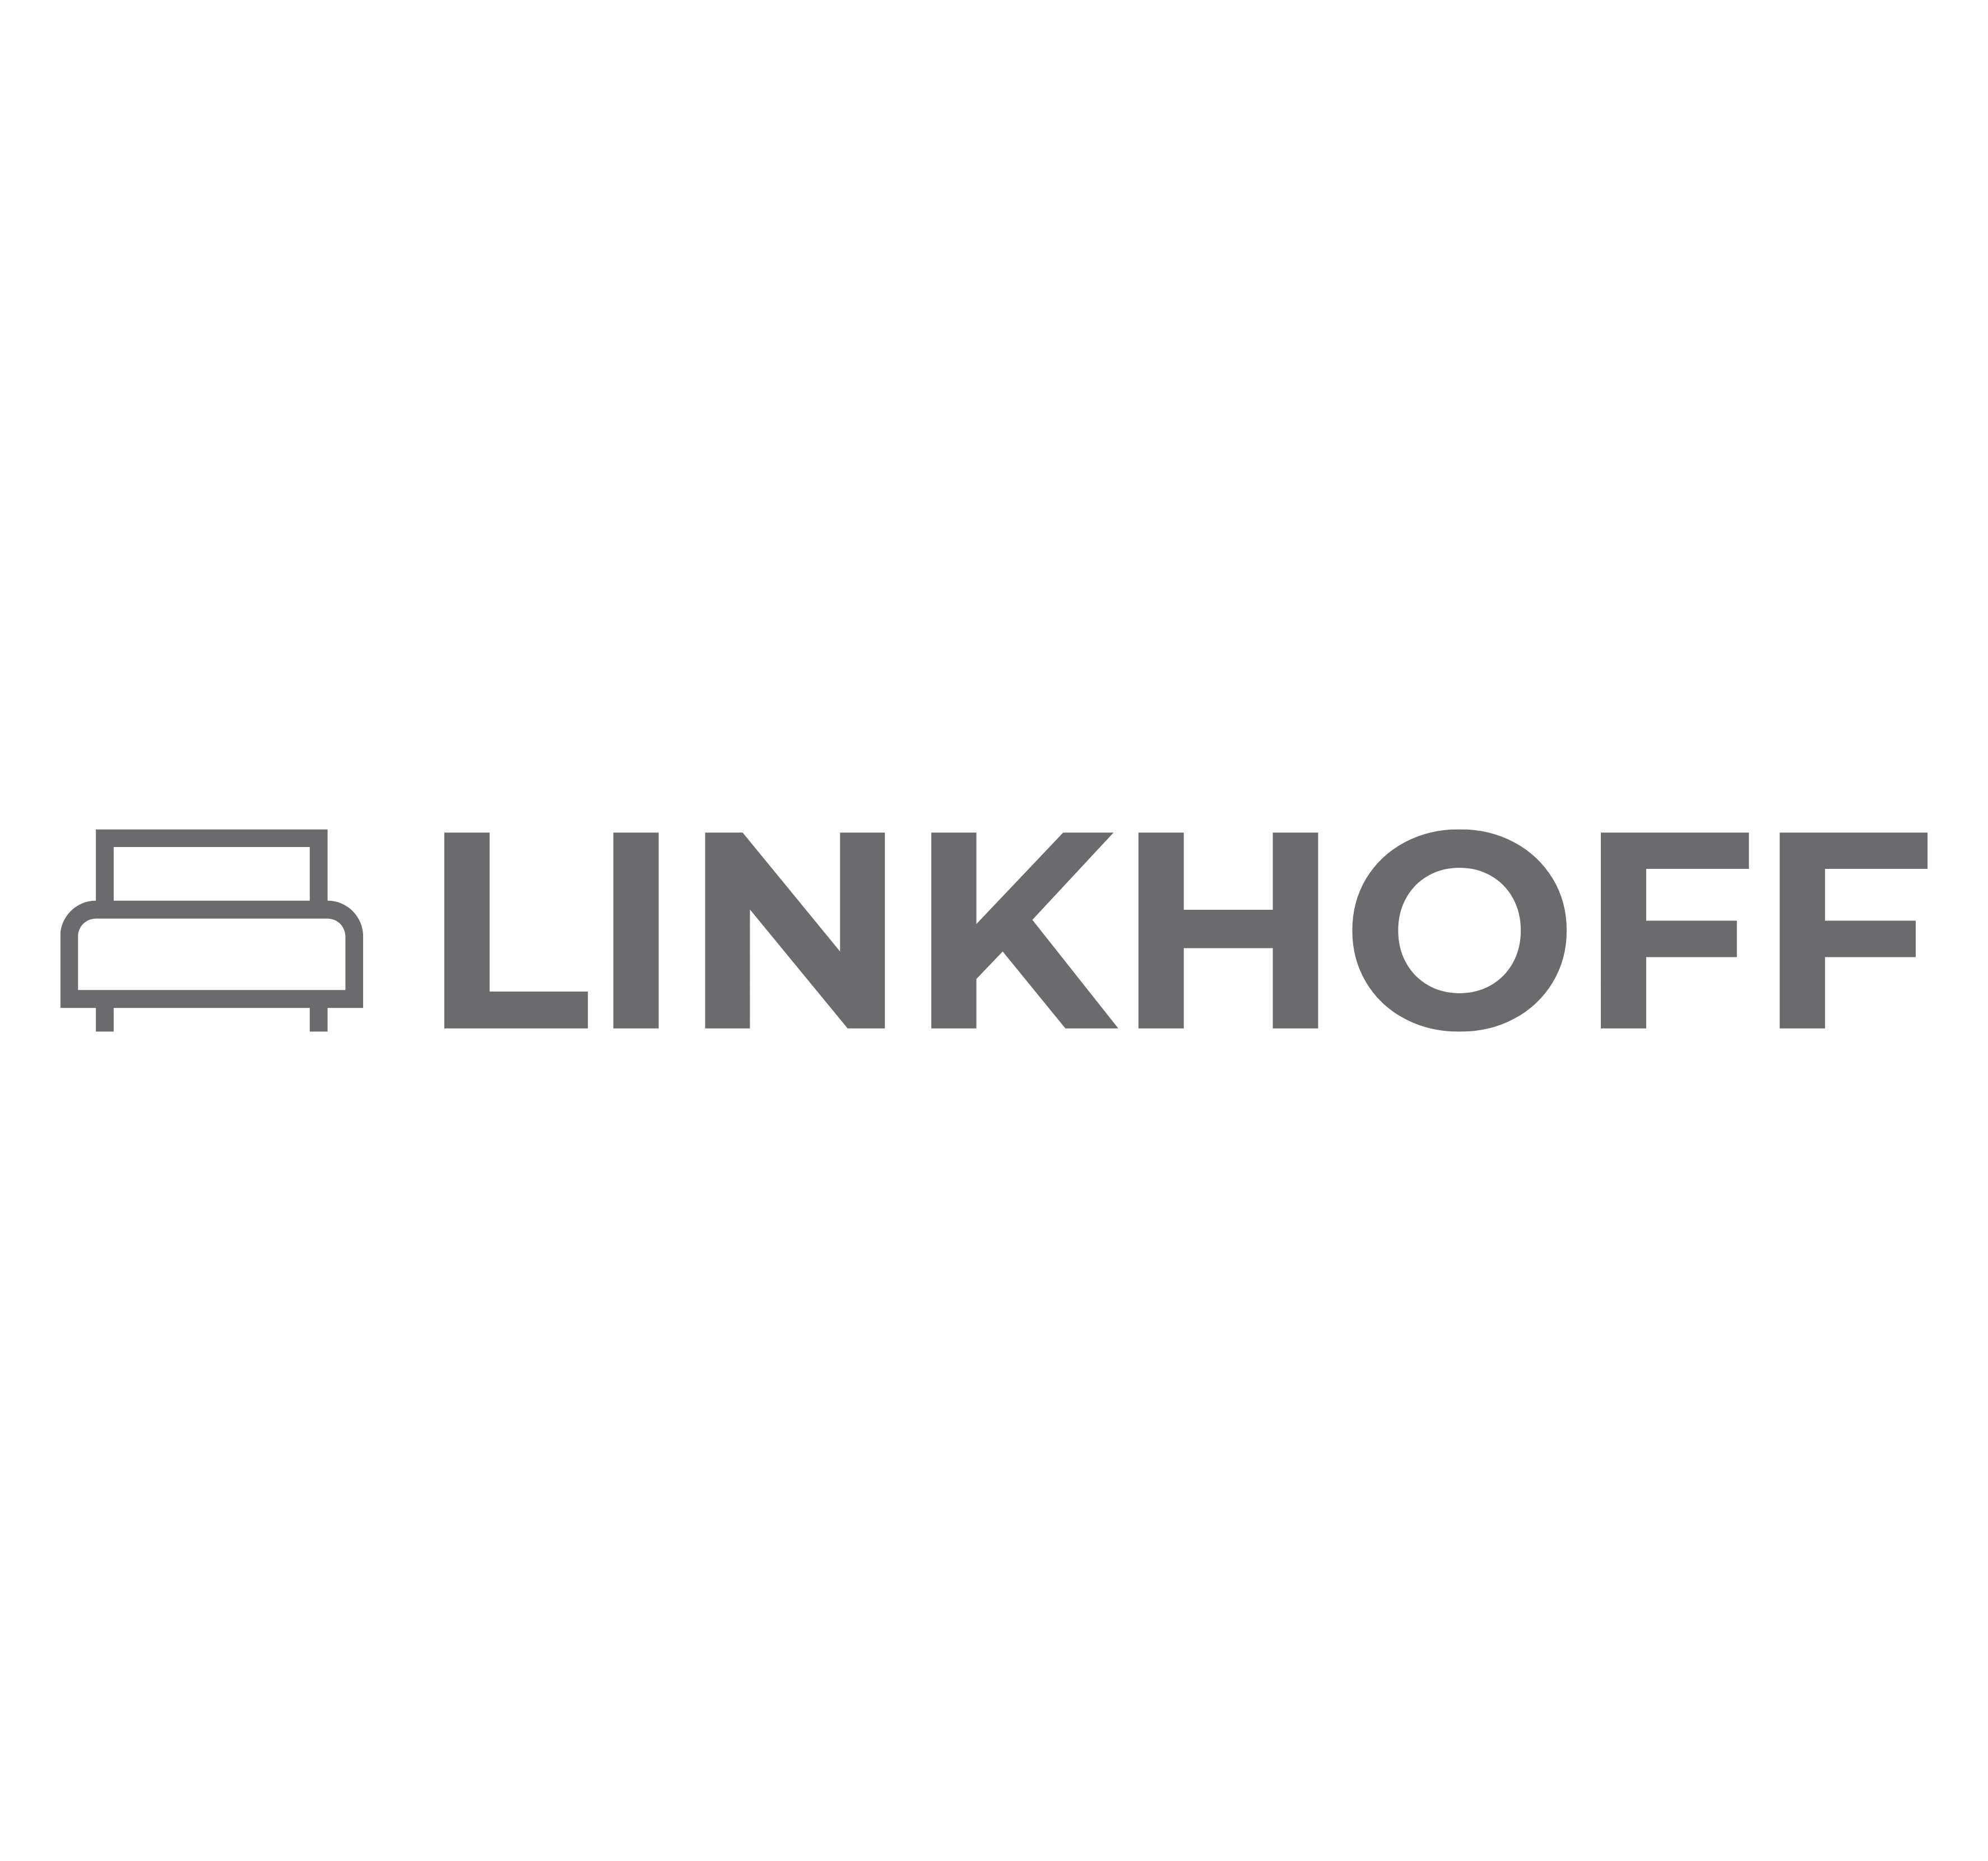 LINKHOFF